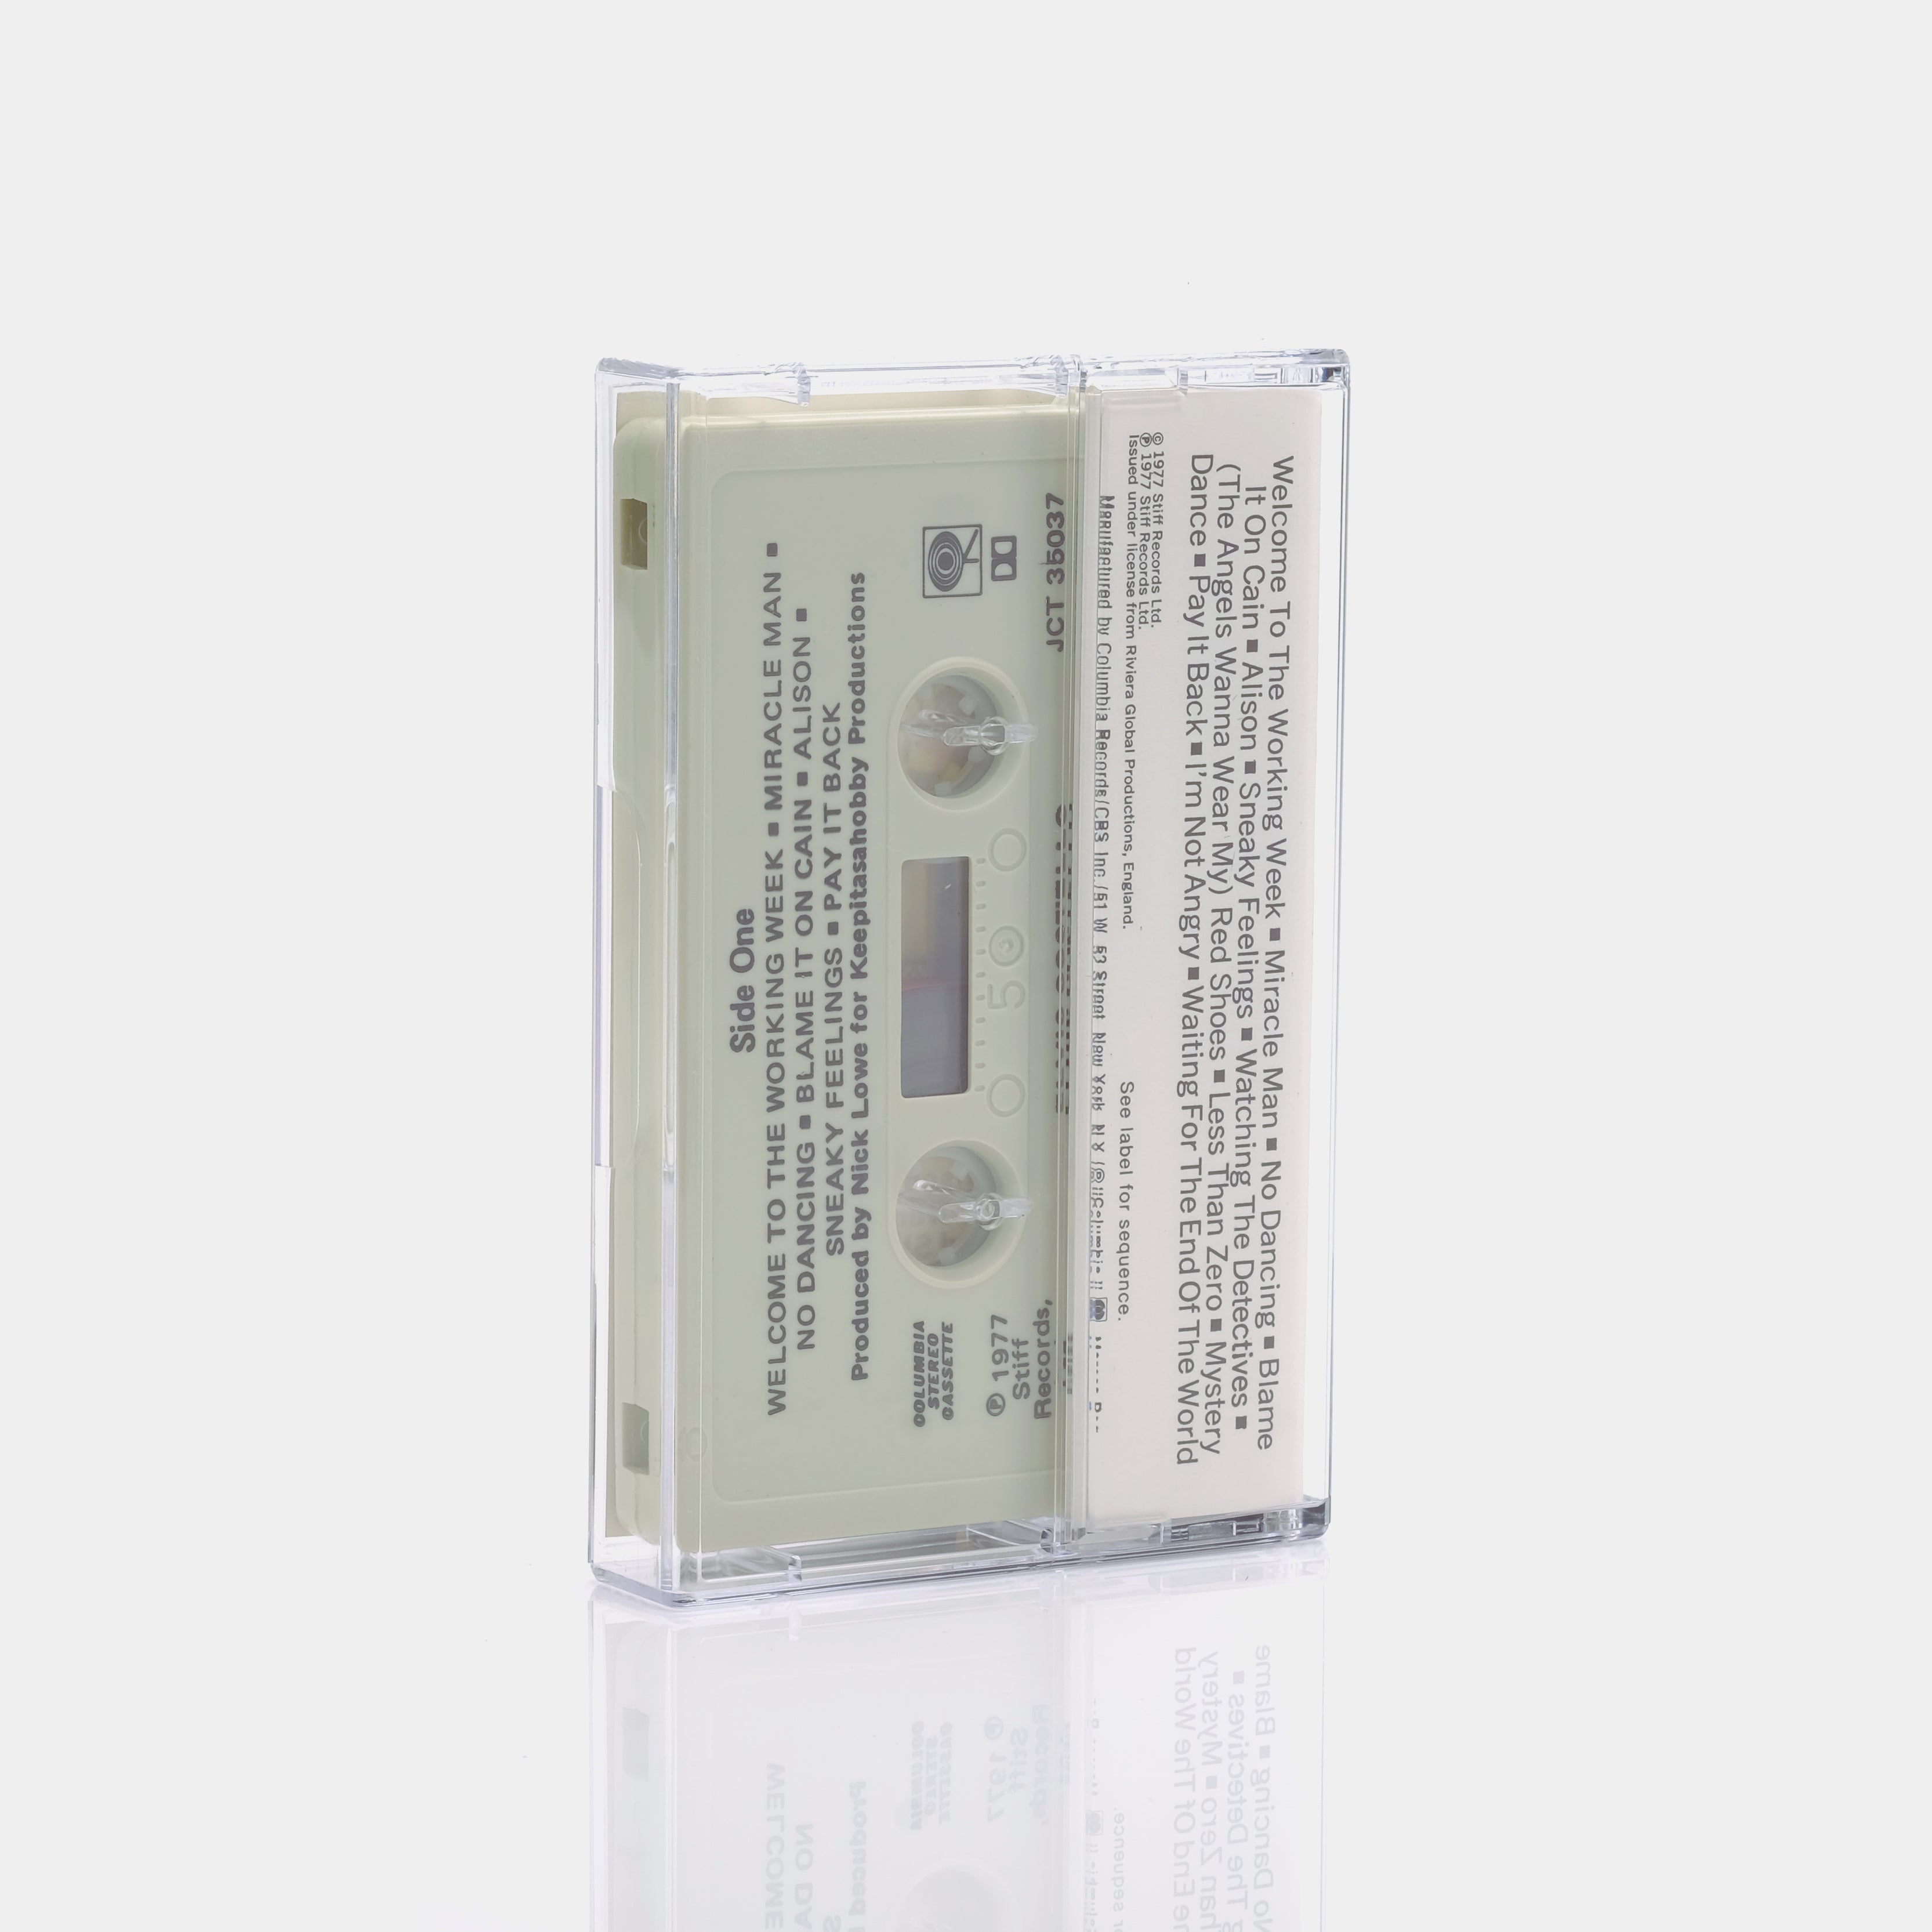 Tom Scott - Street Beat Cassette Tape